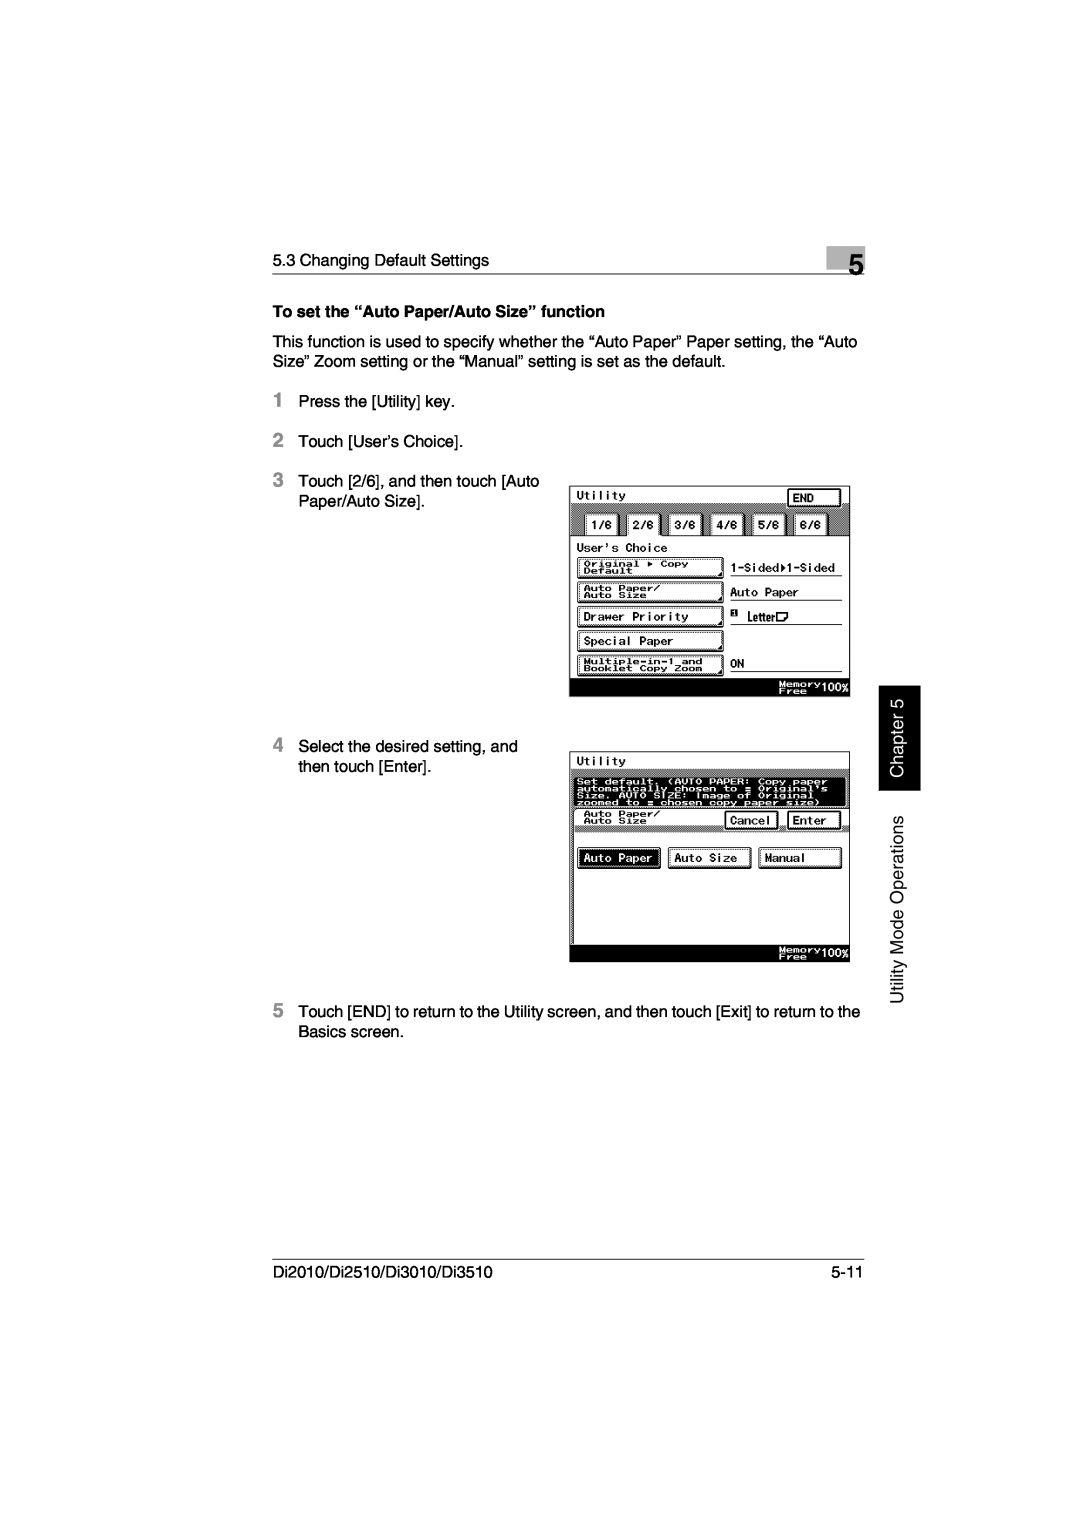 Minolta DI2510, DI2010, DI3010, Di3510 user manual Utility Mode Operations Chapter, To set the “Auto Paper/Auto Size” function 